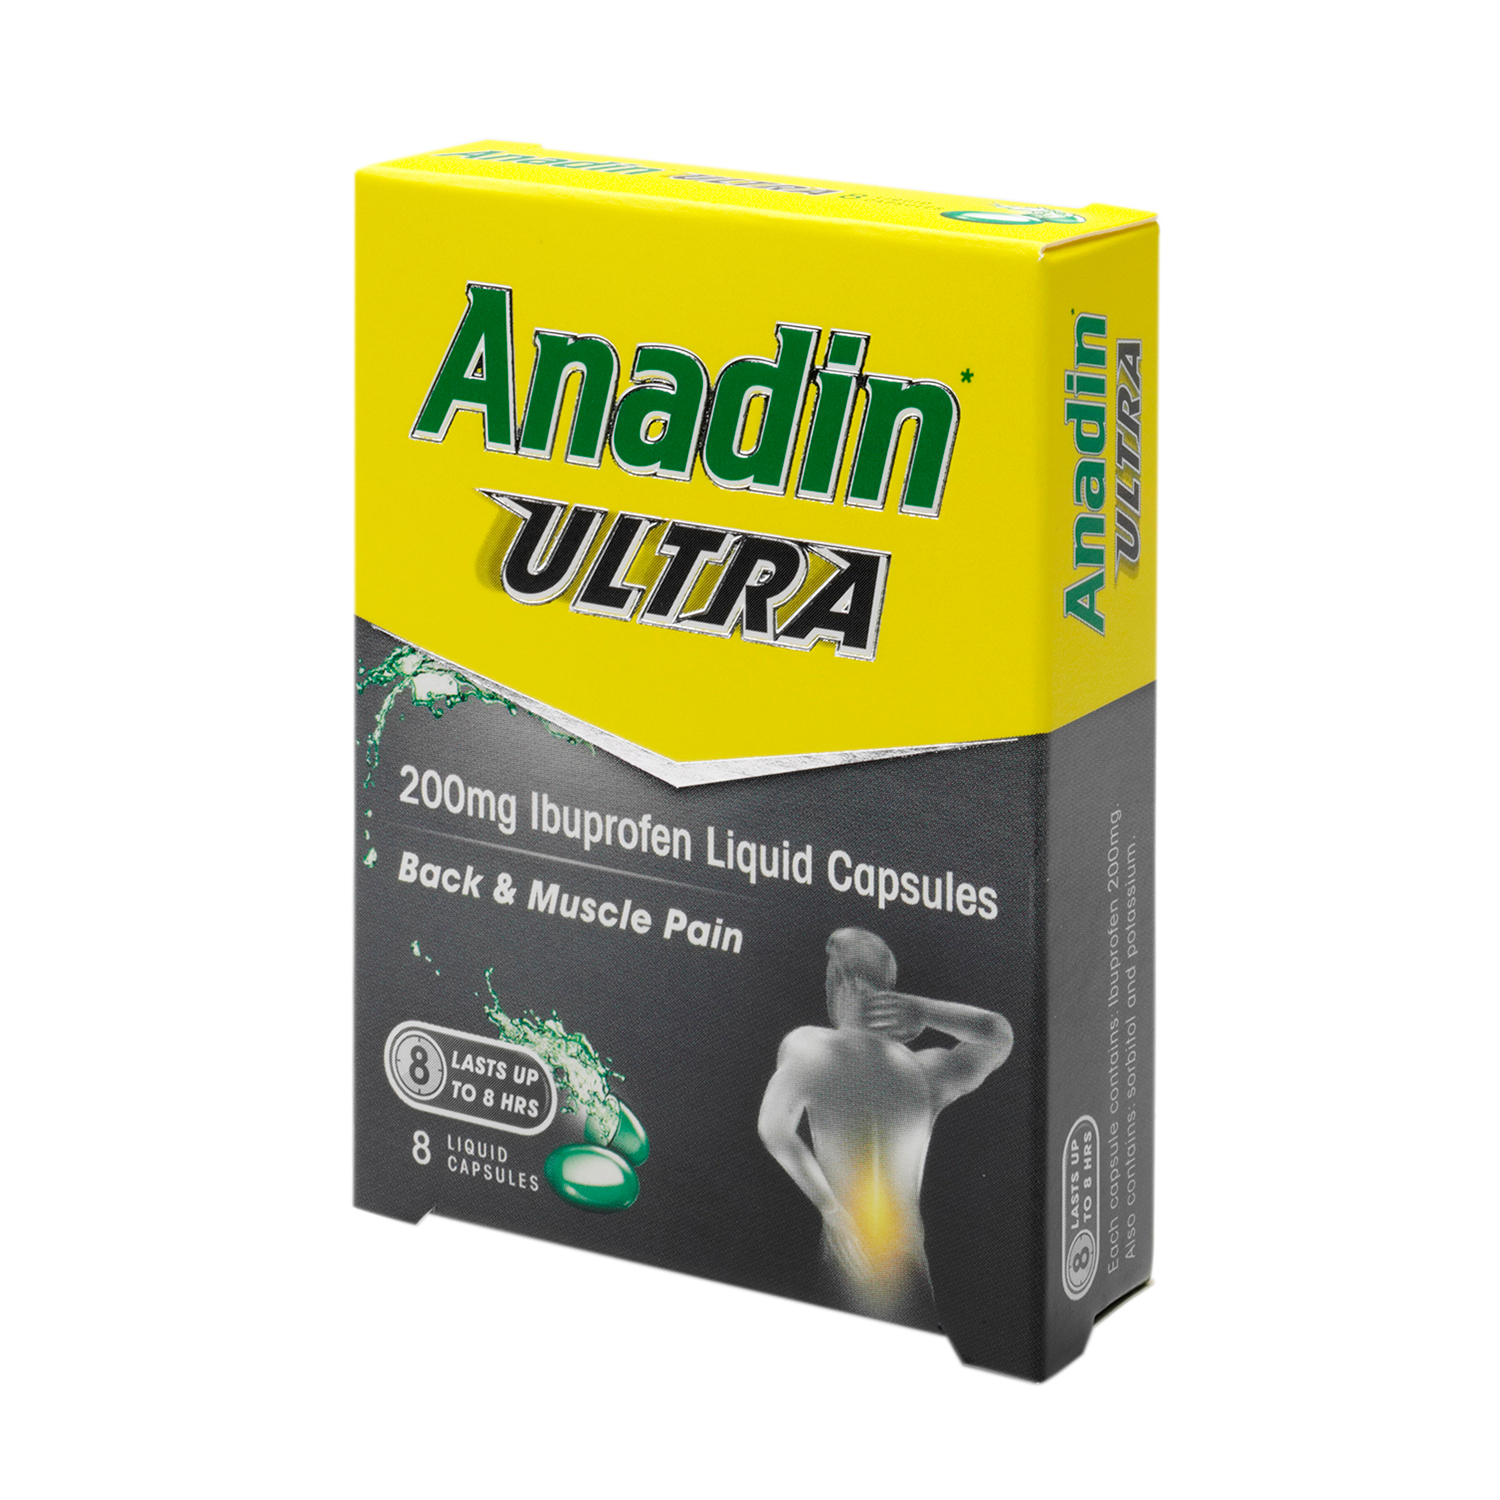 Pack of 8 Anadin Ultra Ibuprofen Liquid Capsules Image